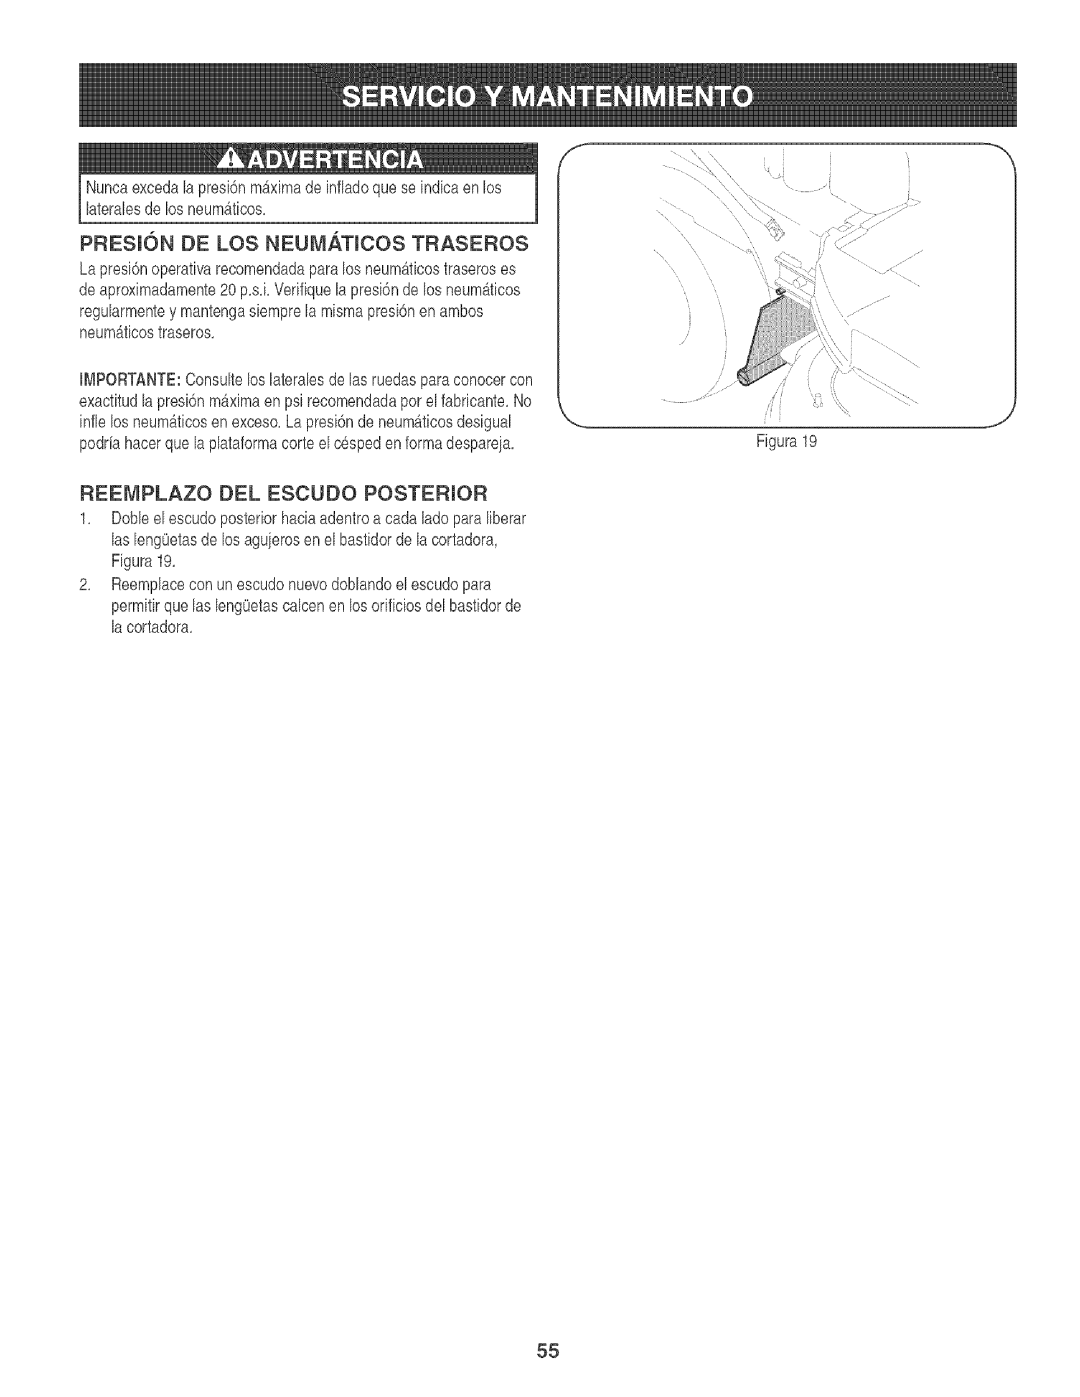 Craftsman 247.88933 manual PRESION DE LOS NEUMATmCOS TRASEROS, Reemplazo Del Escudo Posterior 